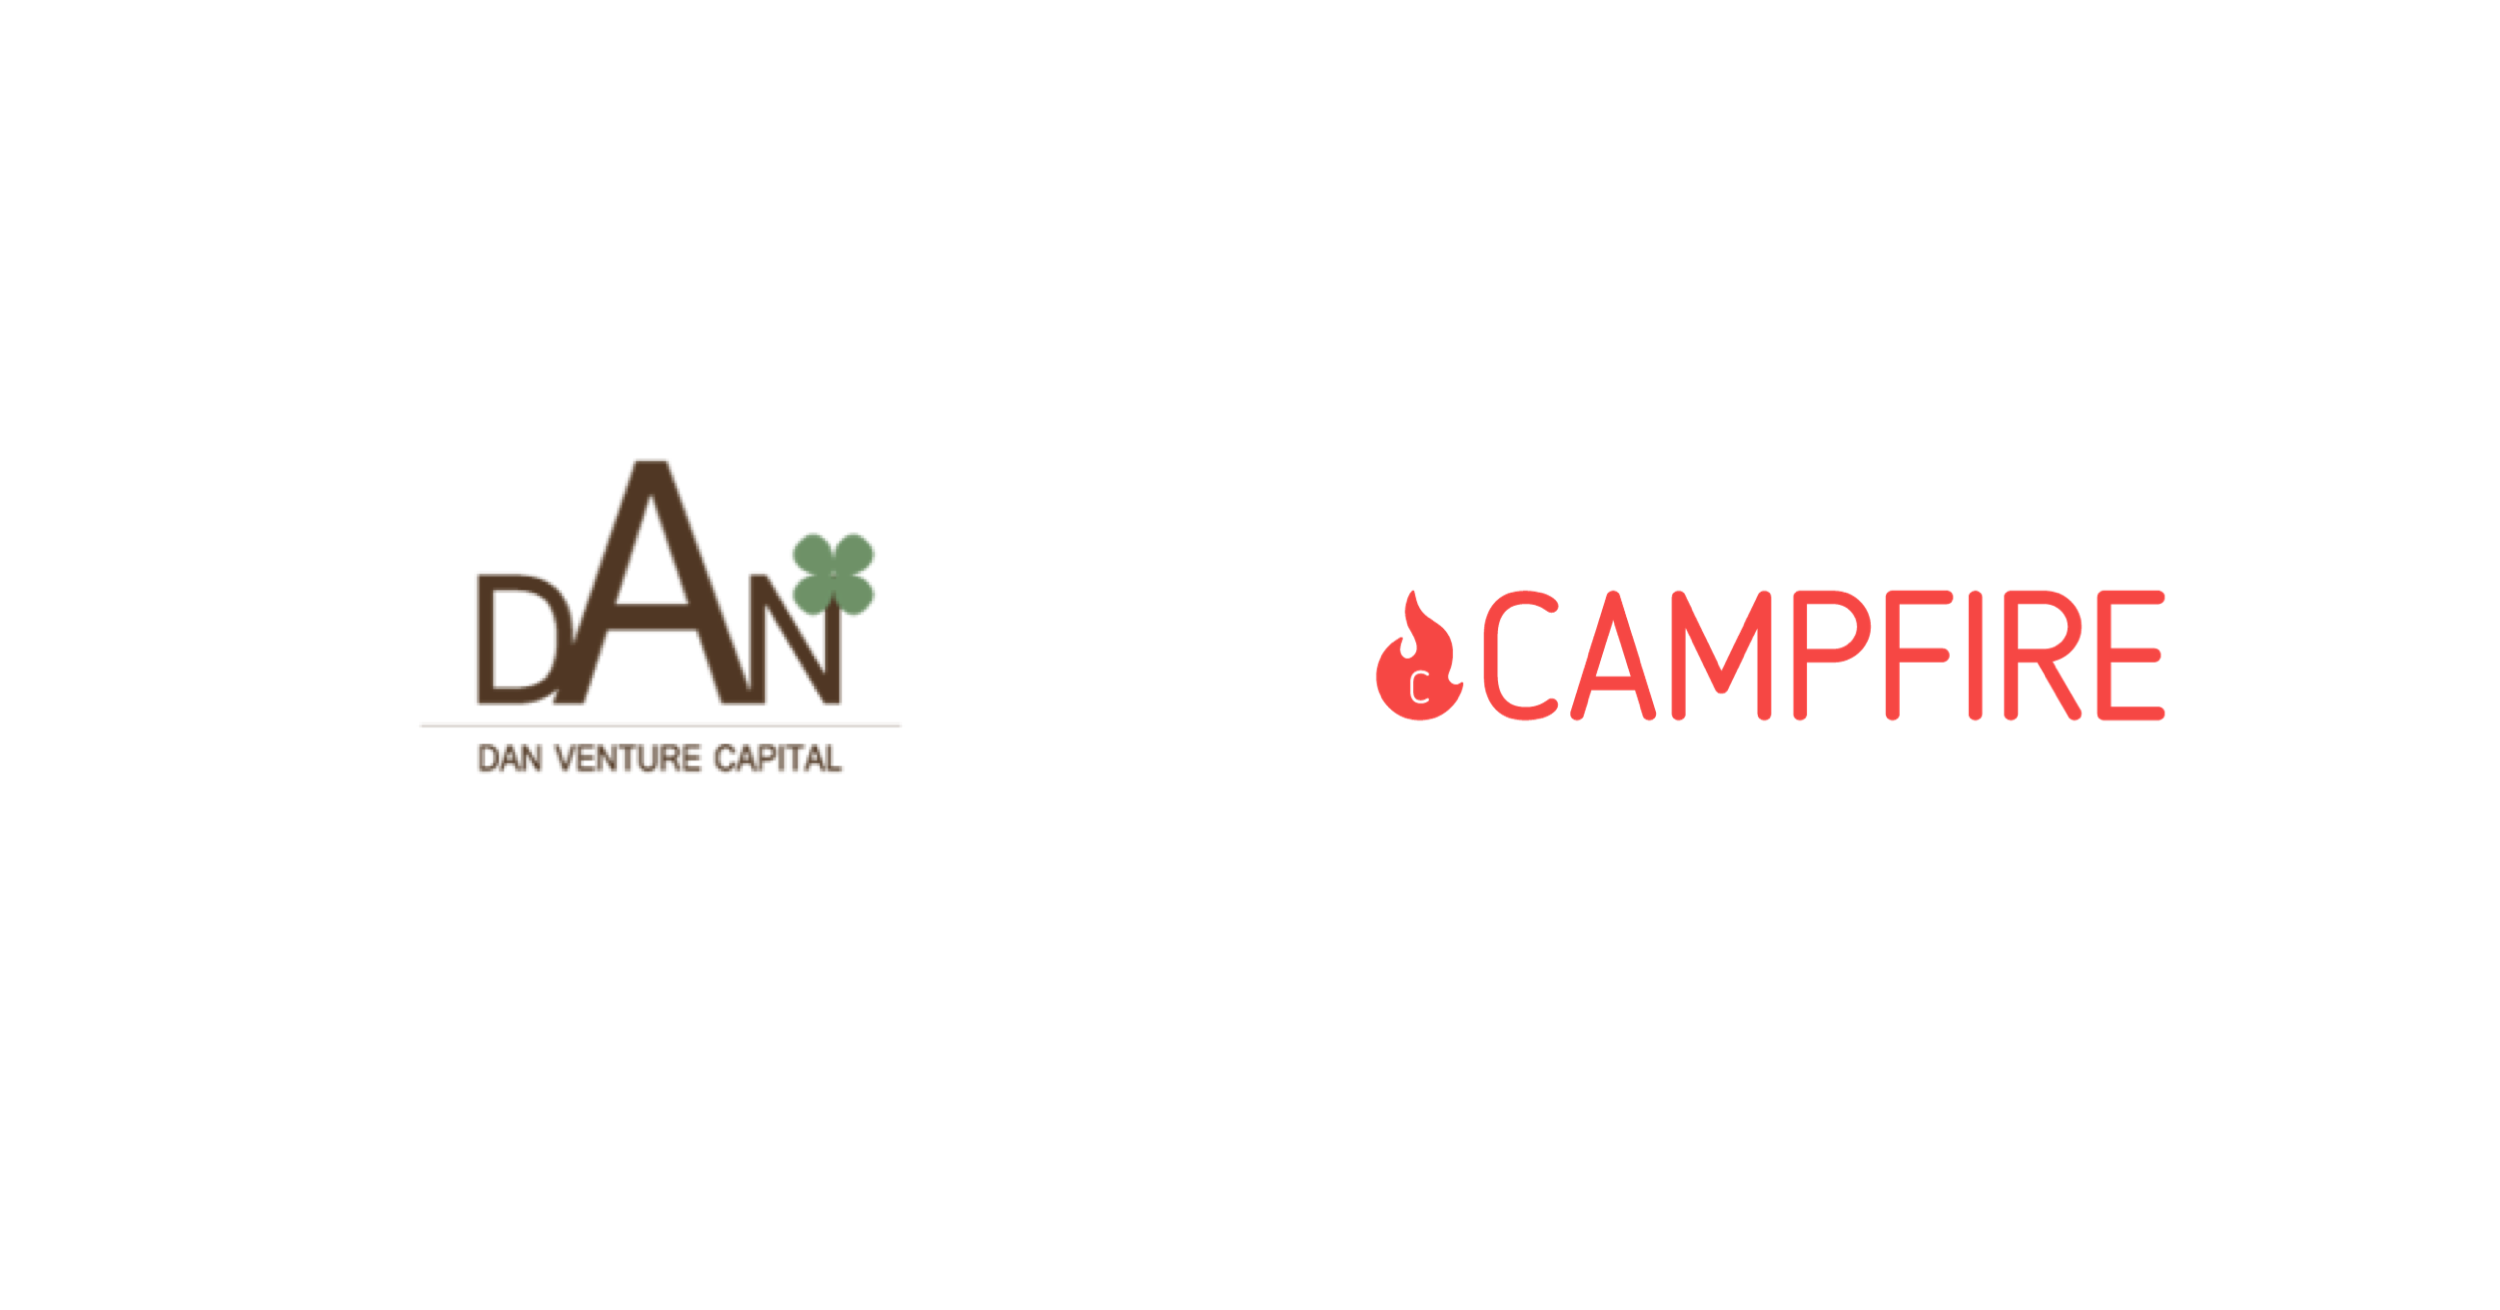 CAMPFIRE、株式型クラウドファンディングサービスを展開するDANベンチャーキャピタルの株式取得（グループ会社化